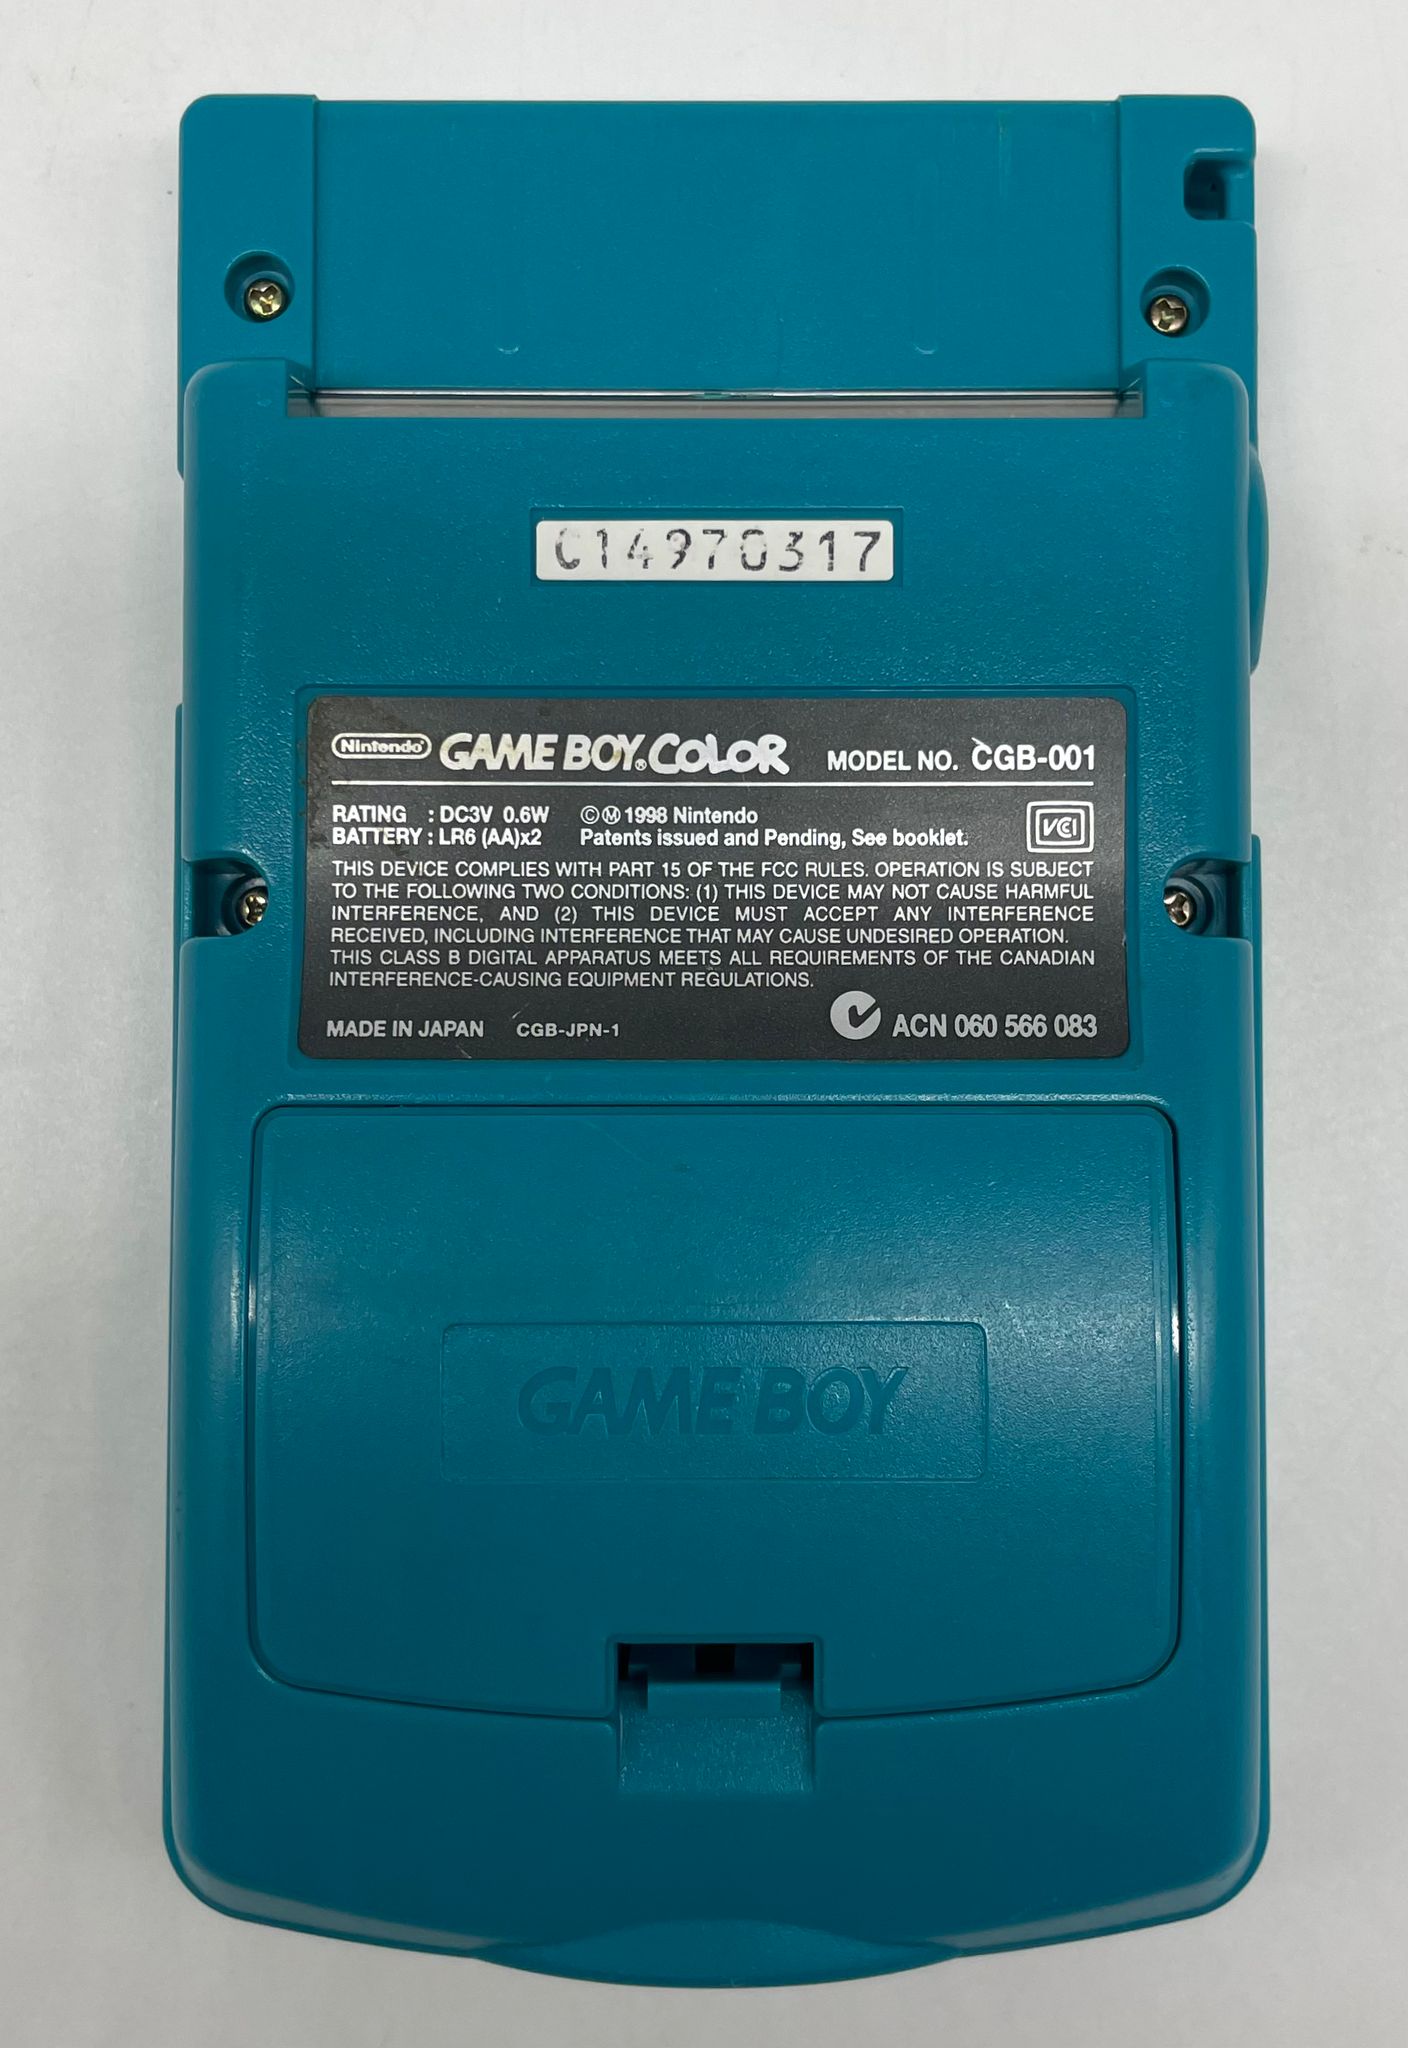 Game Boy Color Türkis Konsole